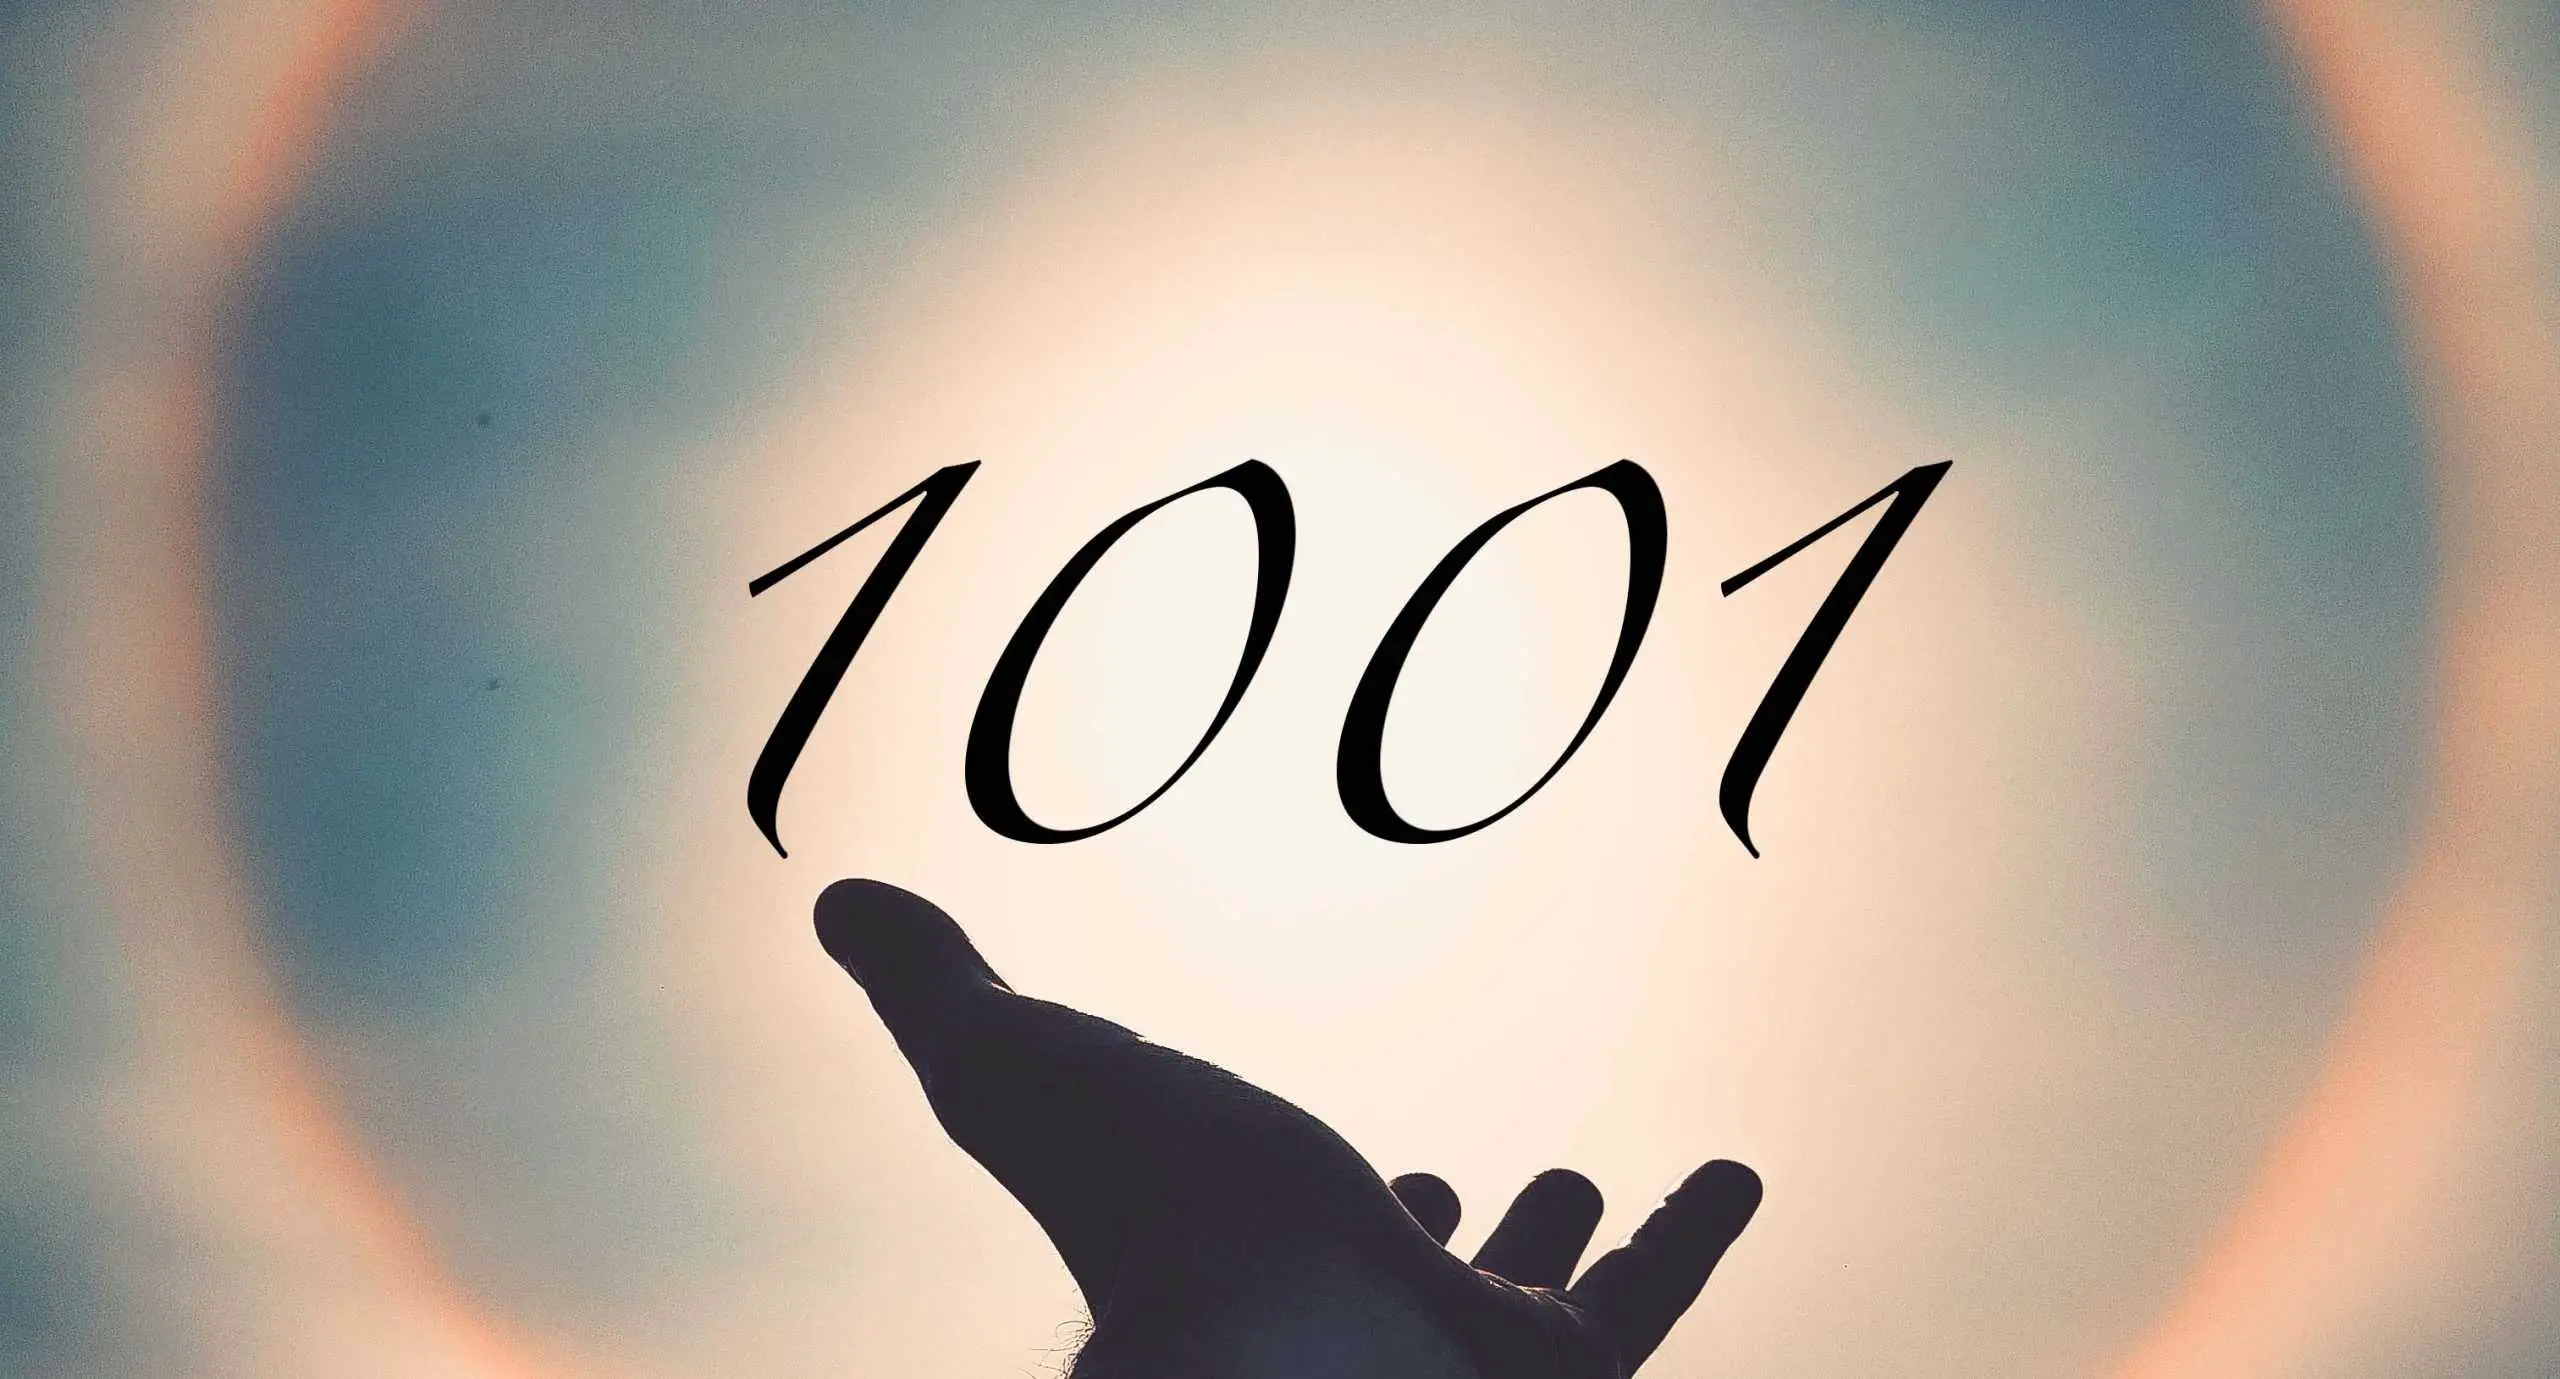 Signification du nombre 1001